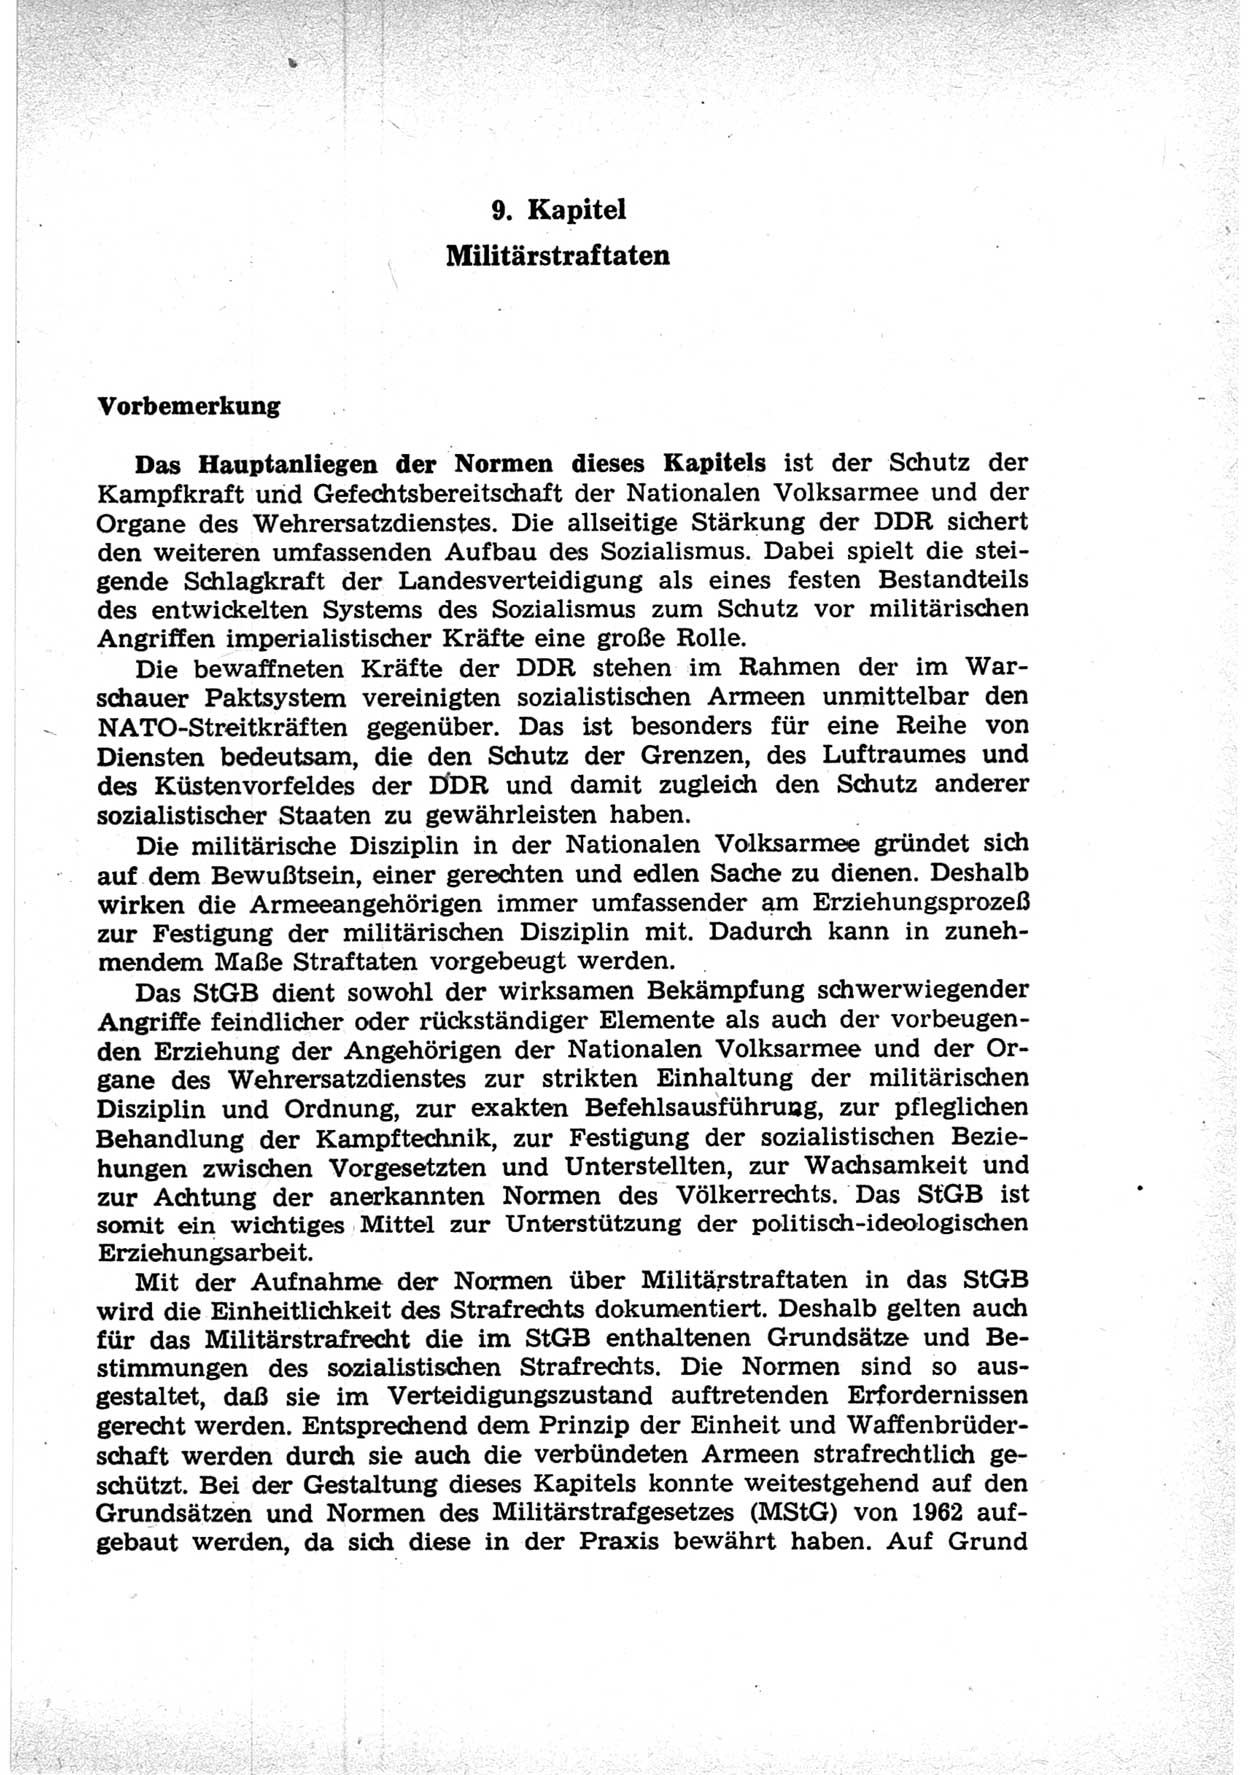 Strafrecht der Deutschen Demokratischen Republik (DDR), Lehrkommentar zum Strafgesetzbuch (StGB), Besonderer Teil 1969, Seite 295 (Strafr. DDR Lehrkomm. StGB BT 1969, S. 295)